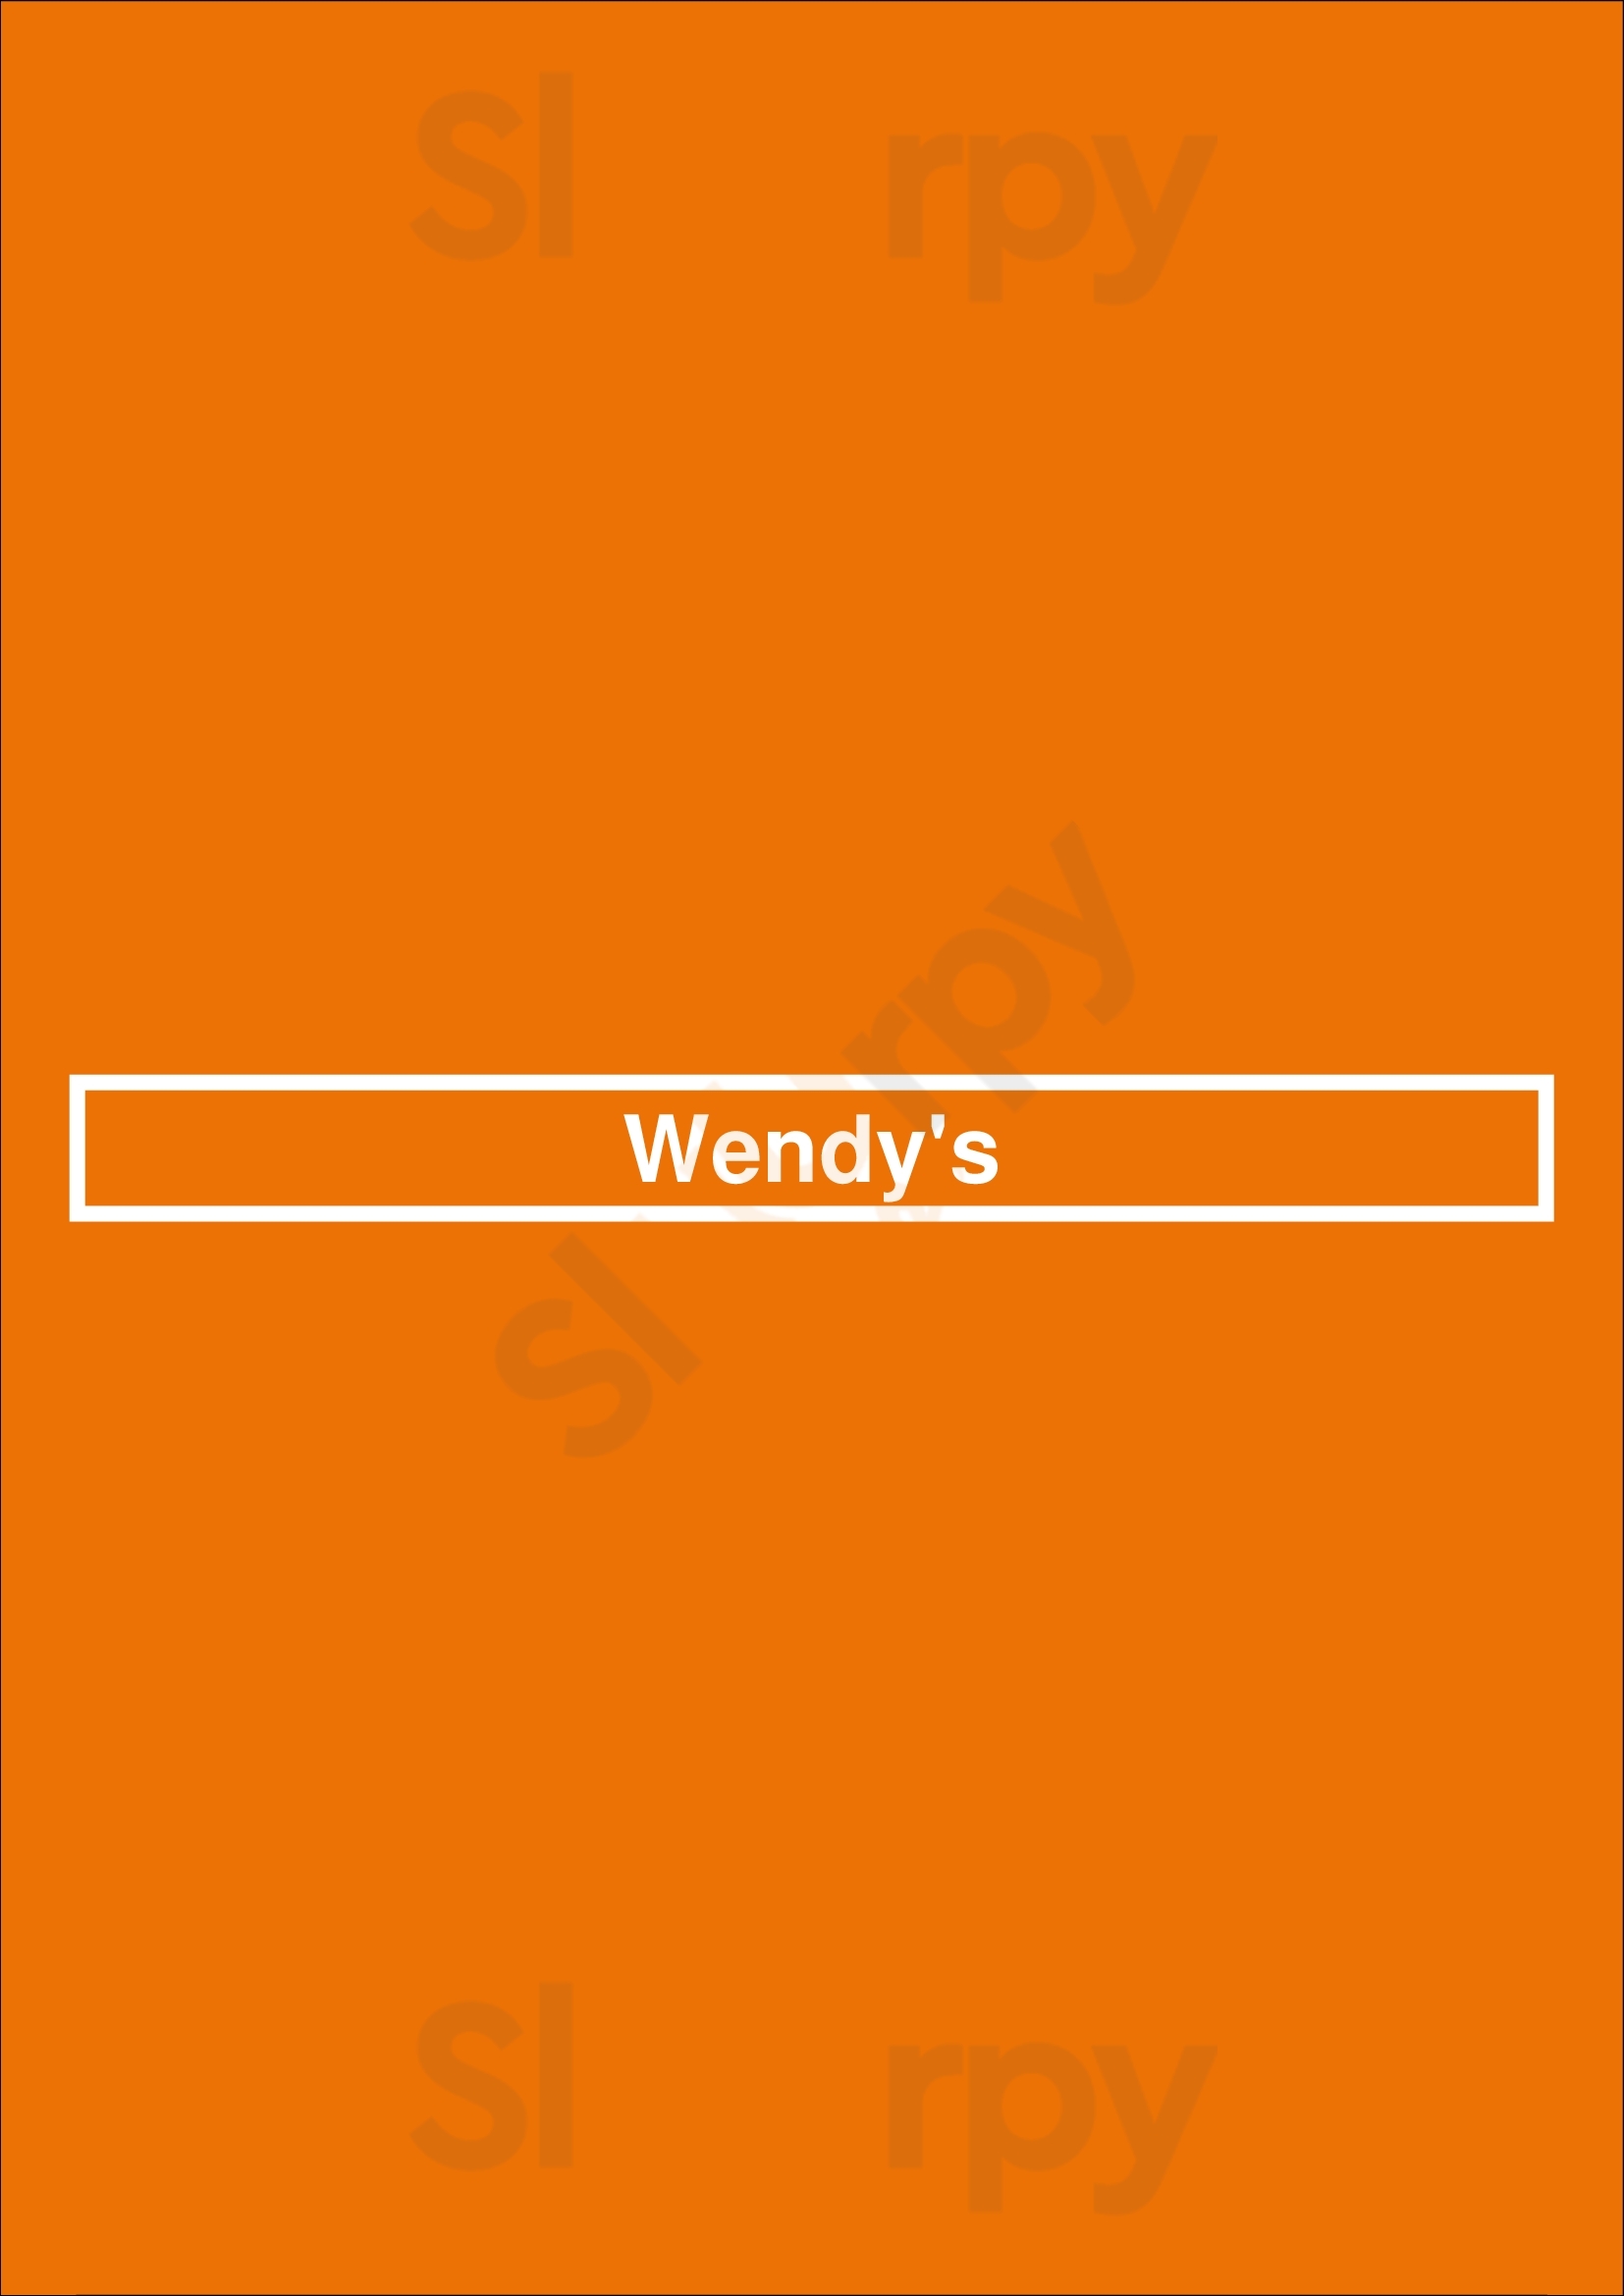 Wendy's Cleveland Menu - 1